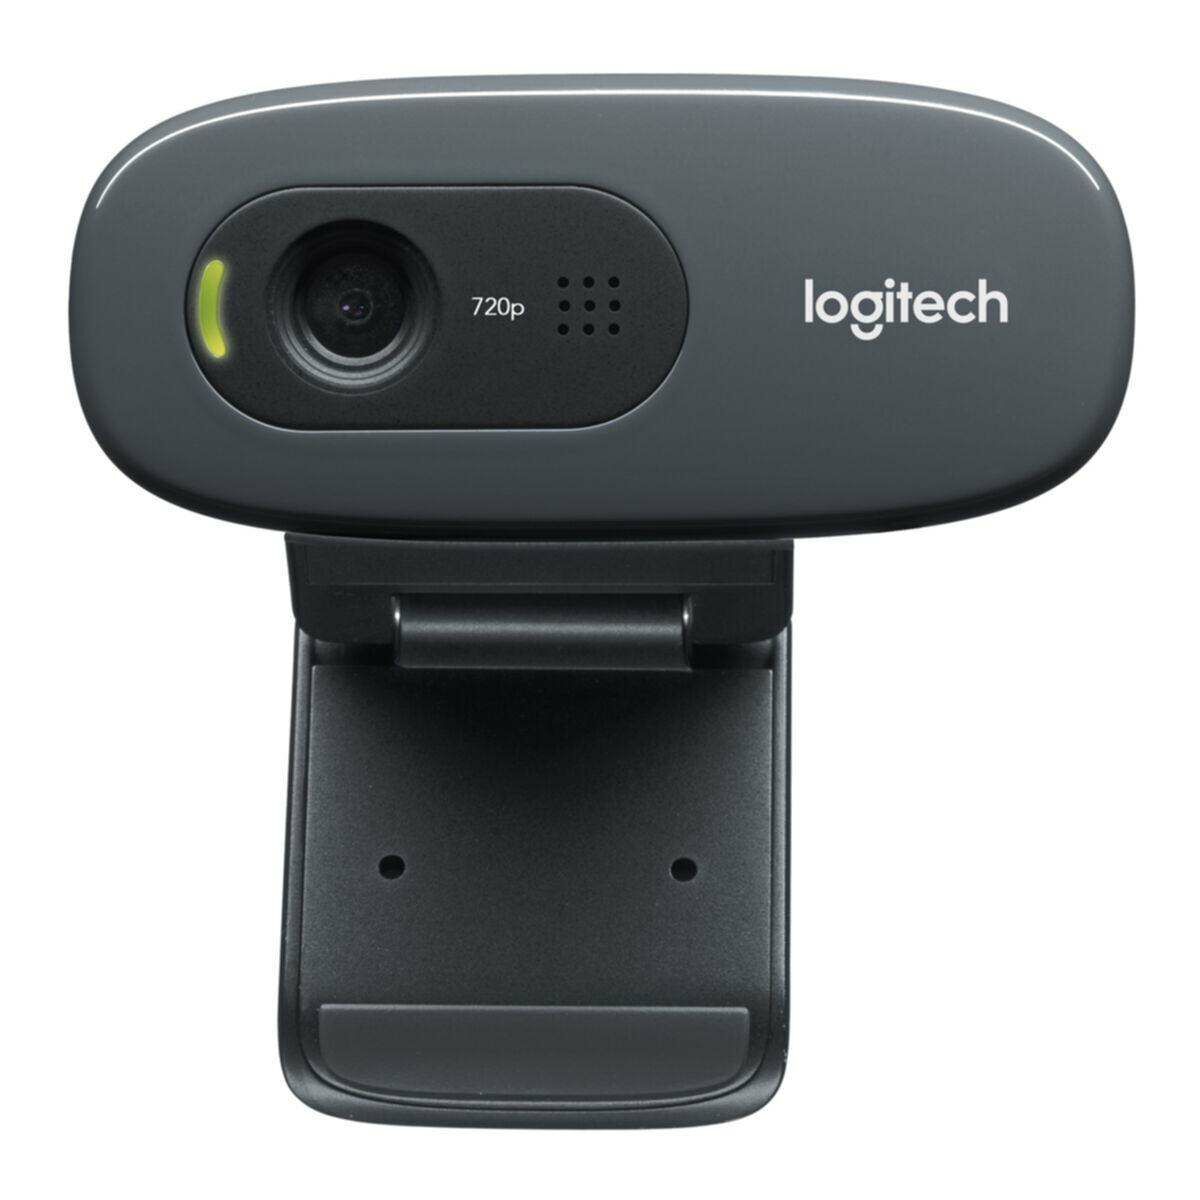 Kép 2/6 - Logitech webkamera C270 720p HD fekete EU (960-001063)